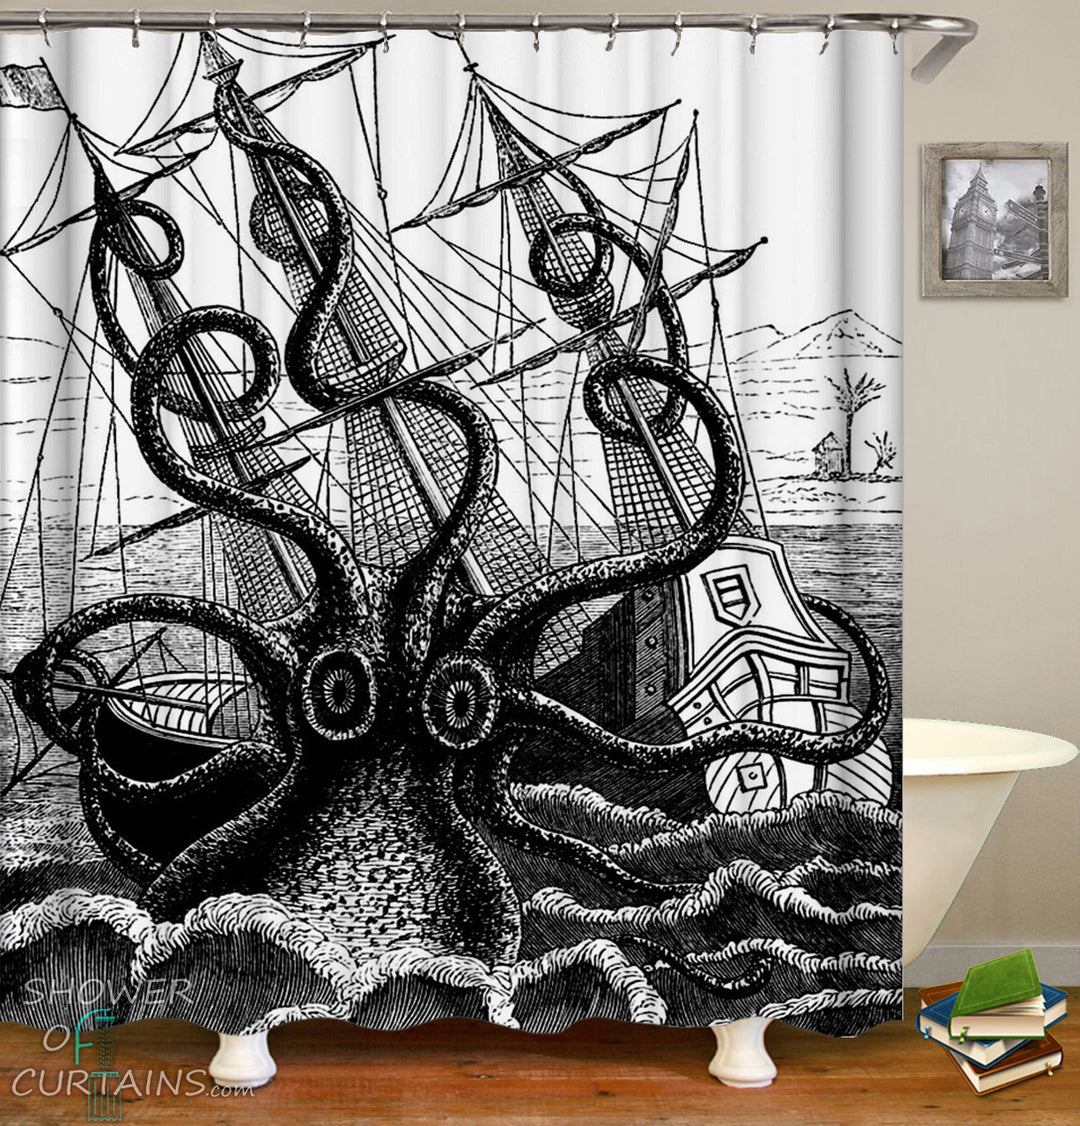 Kraken Shower Curtain - Black And White Kraken Attack